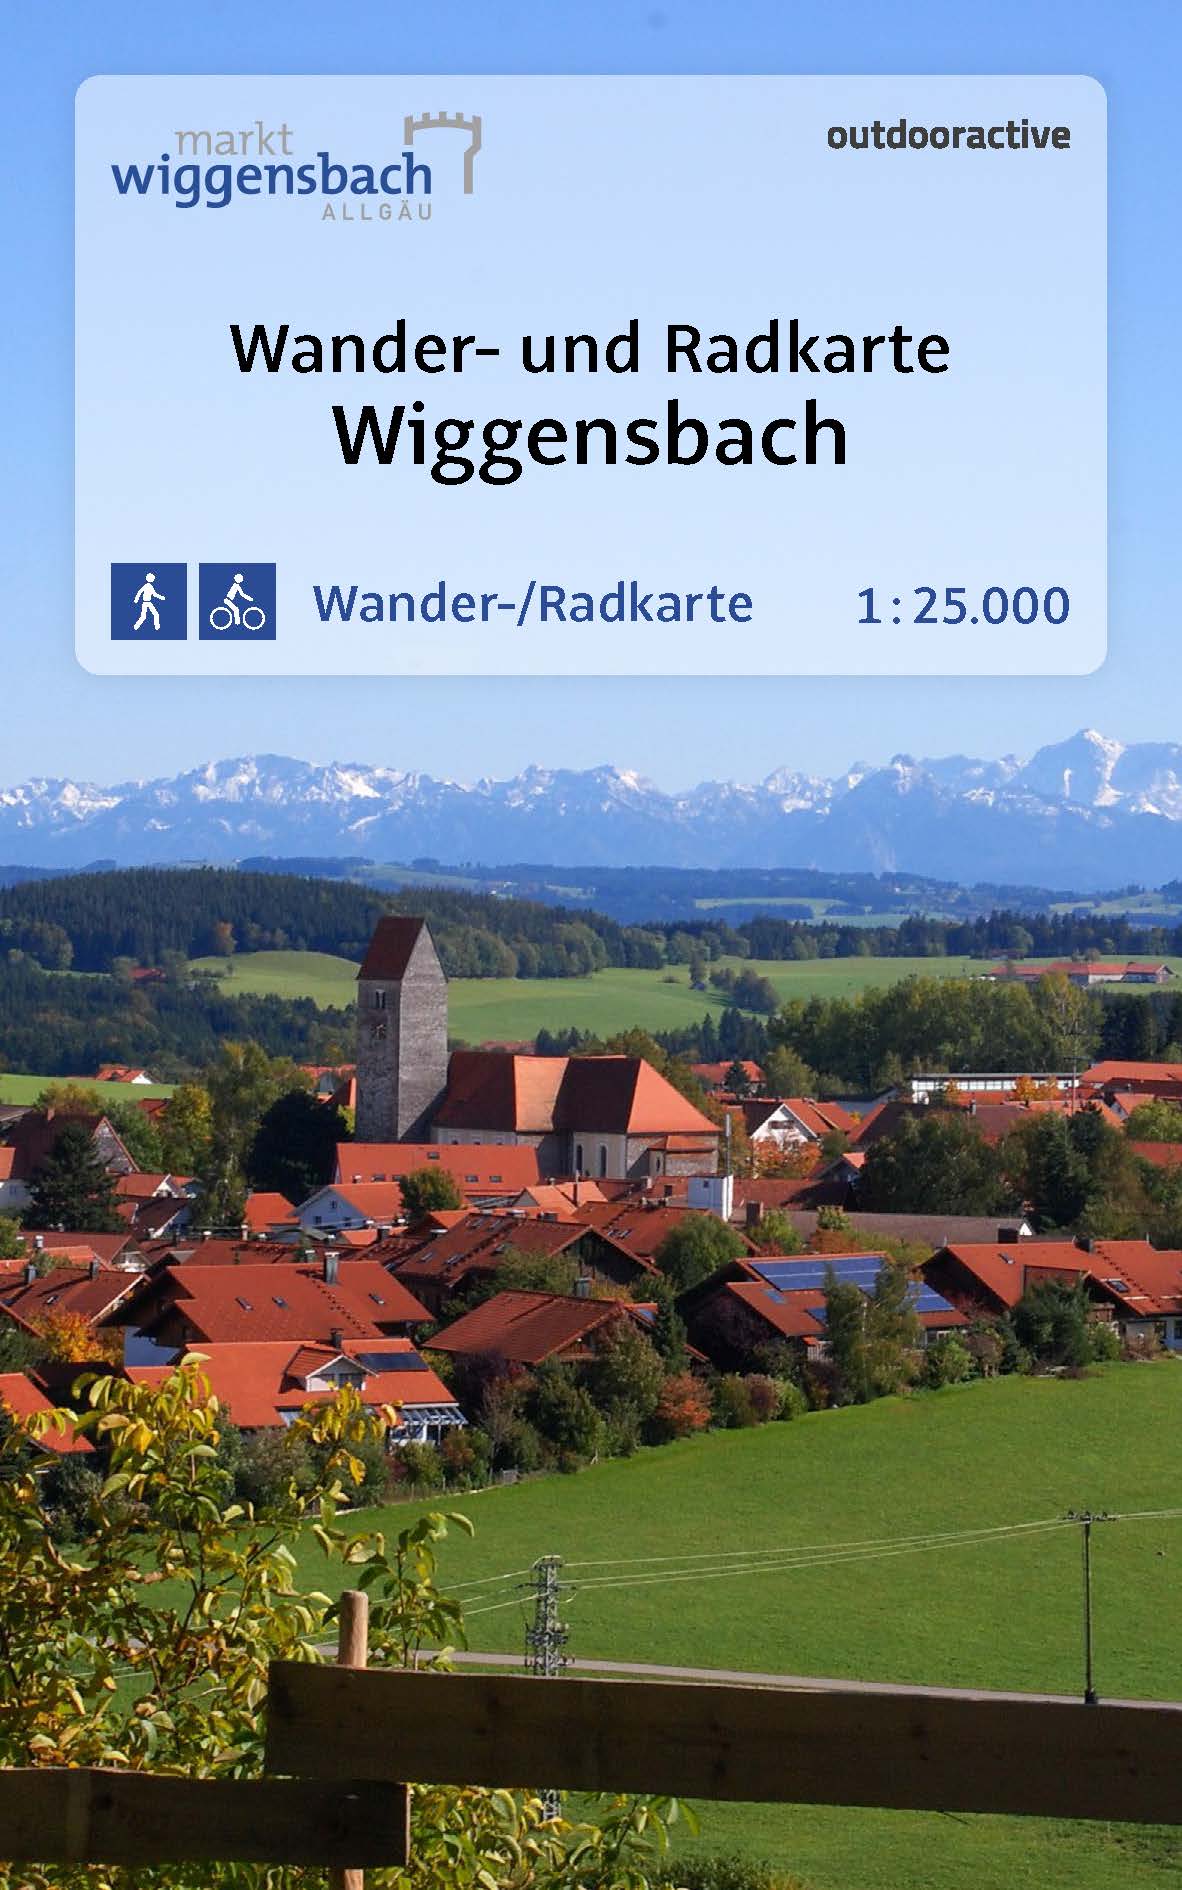 Neue Wander- und Radkarte für Wiggensbach